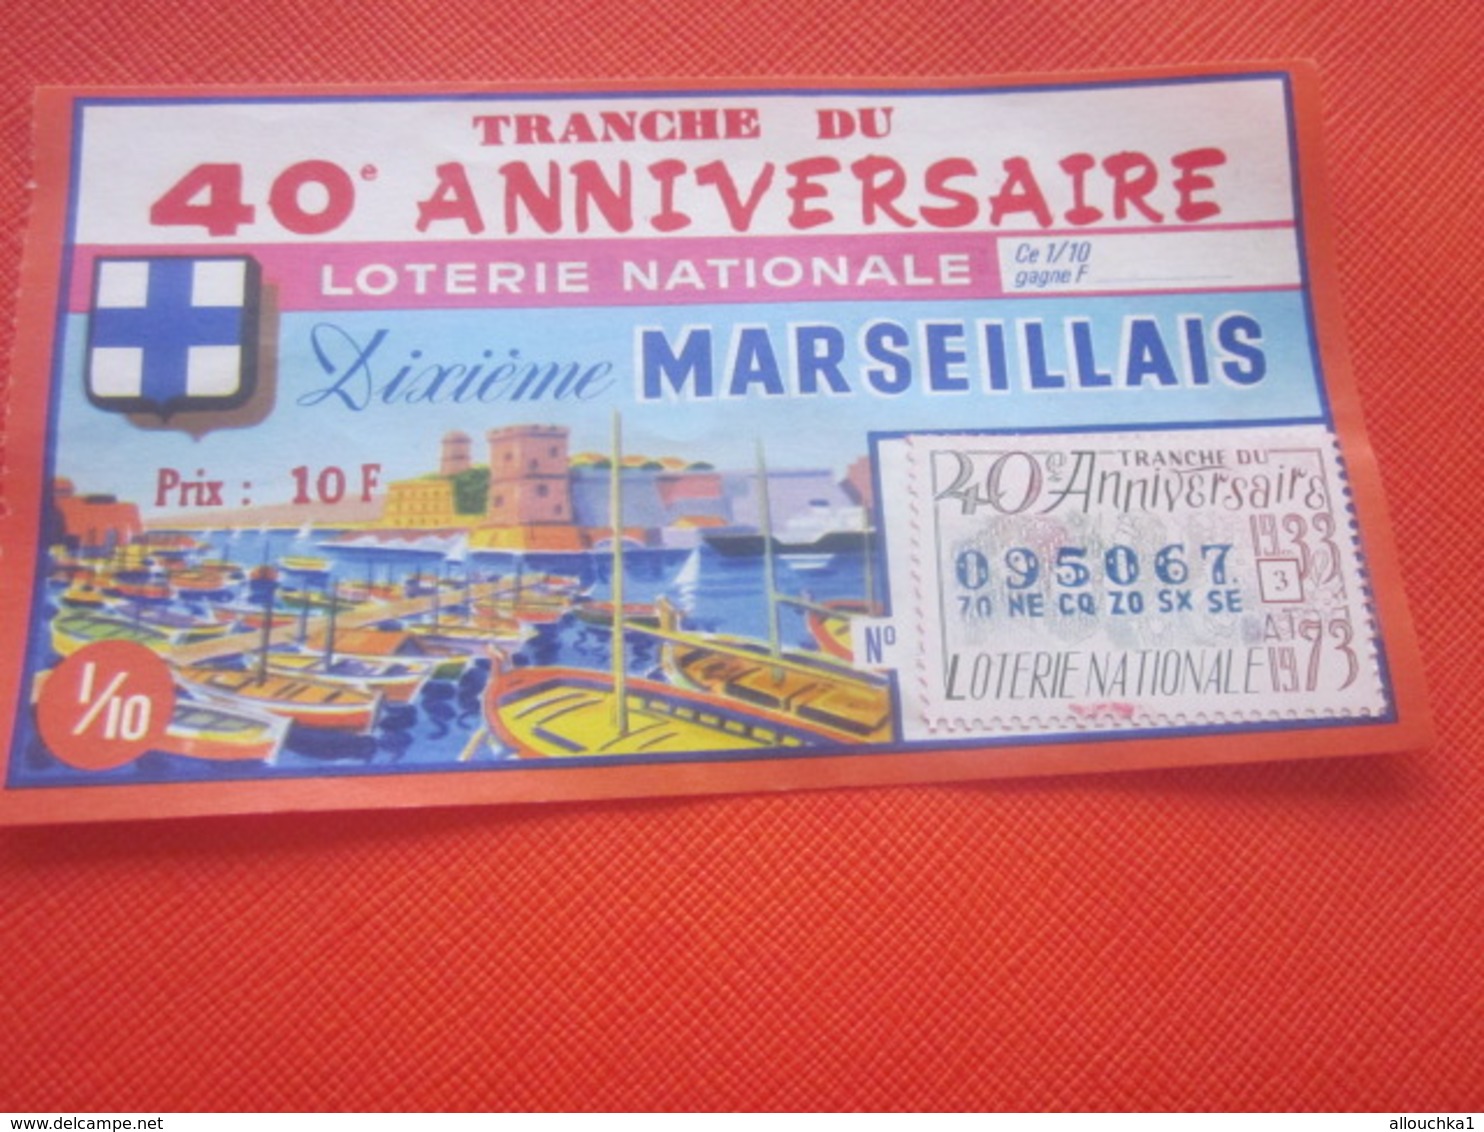 VIEUX PORT MARSEILLE-TR-40é ANNIVERSAIRE-10é MARSEILLAIS-1973-Billet De Loterie Nationale+VIGNETTE IMPRIMÉ TAILLE DOUCE - Billets De Loterie